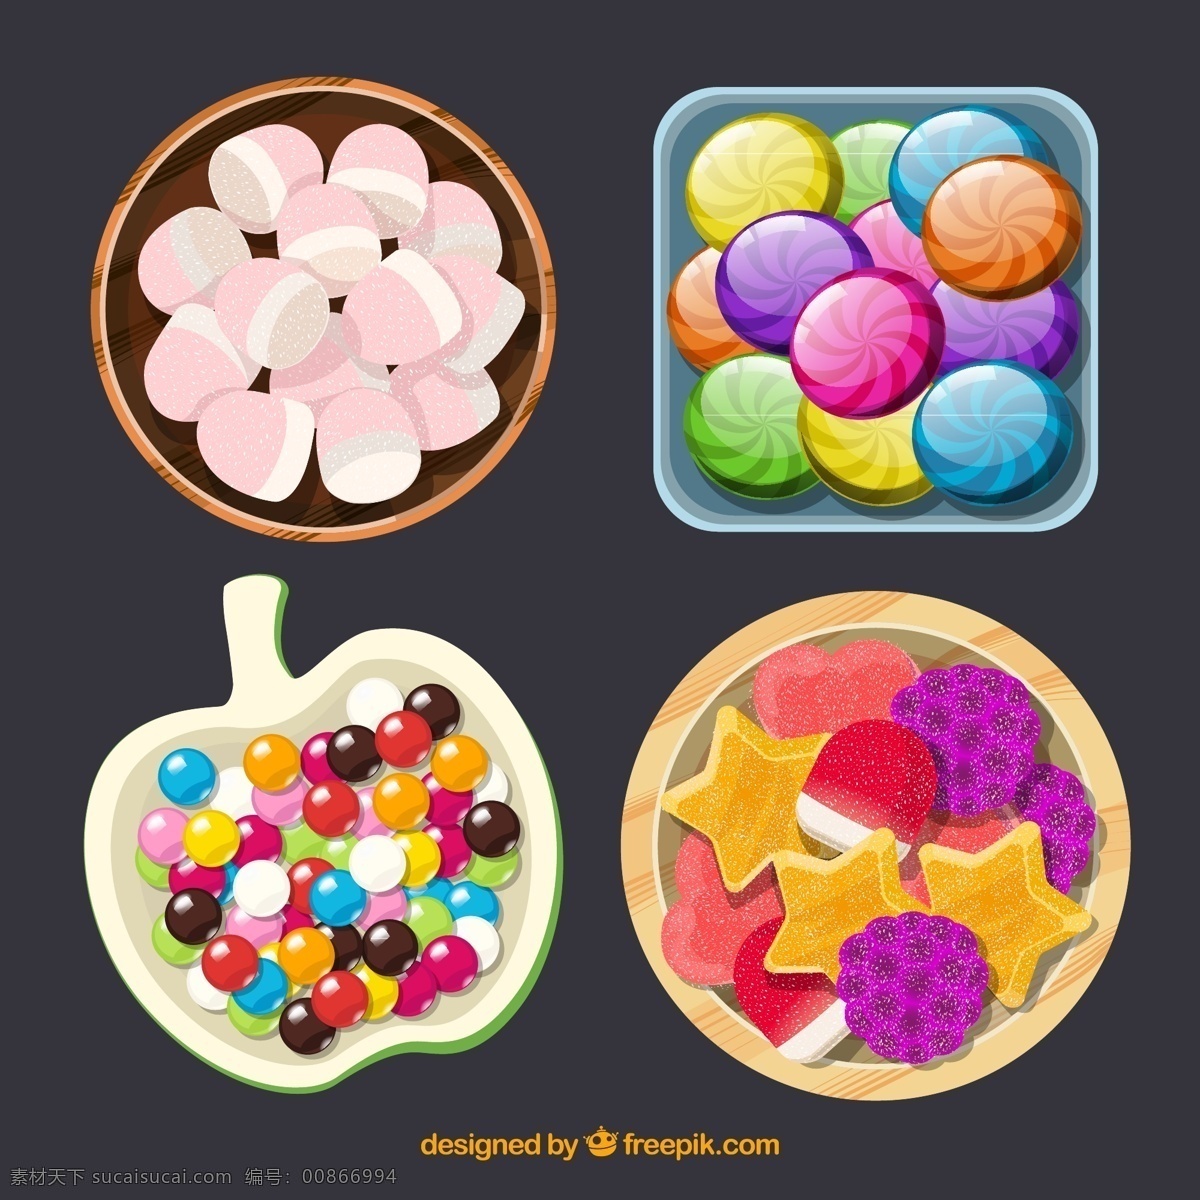 彩色 盘 装 糖果 俯视图 盘装 盘子 糖果俯视图 水果硬糖 生活用品 生活百科 餐饮美食